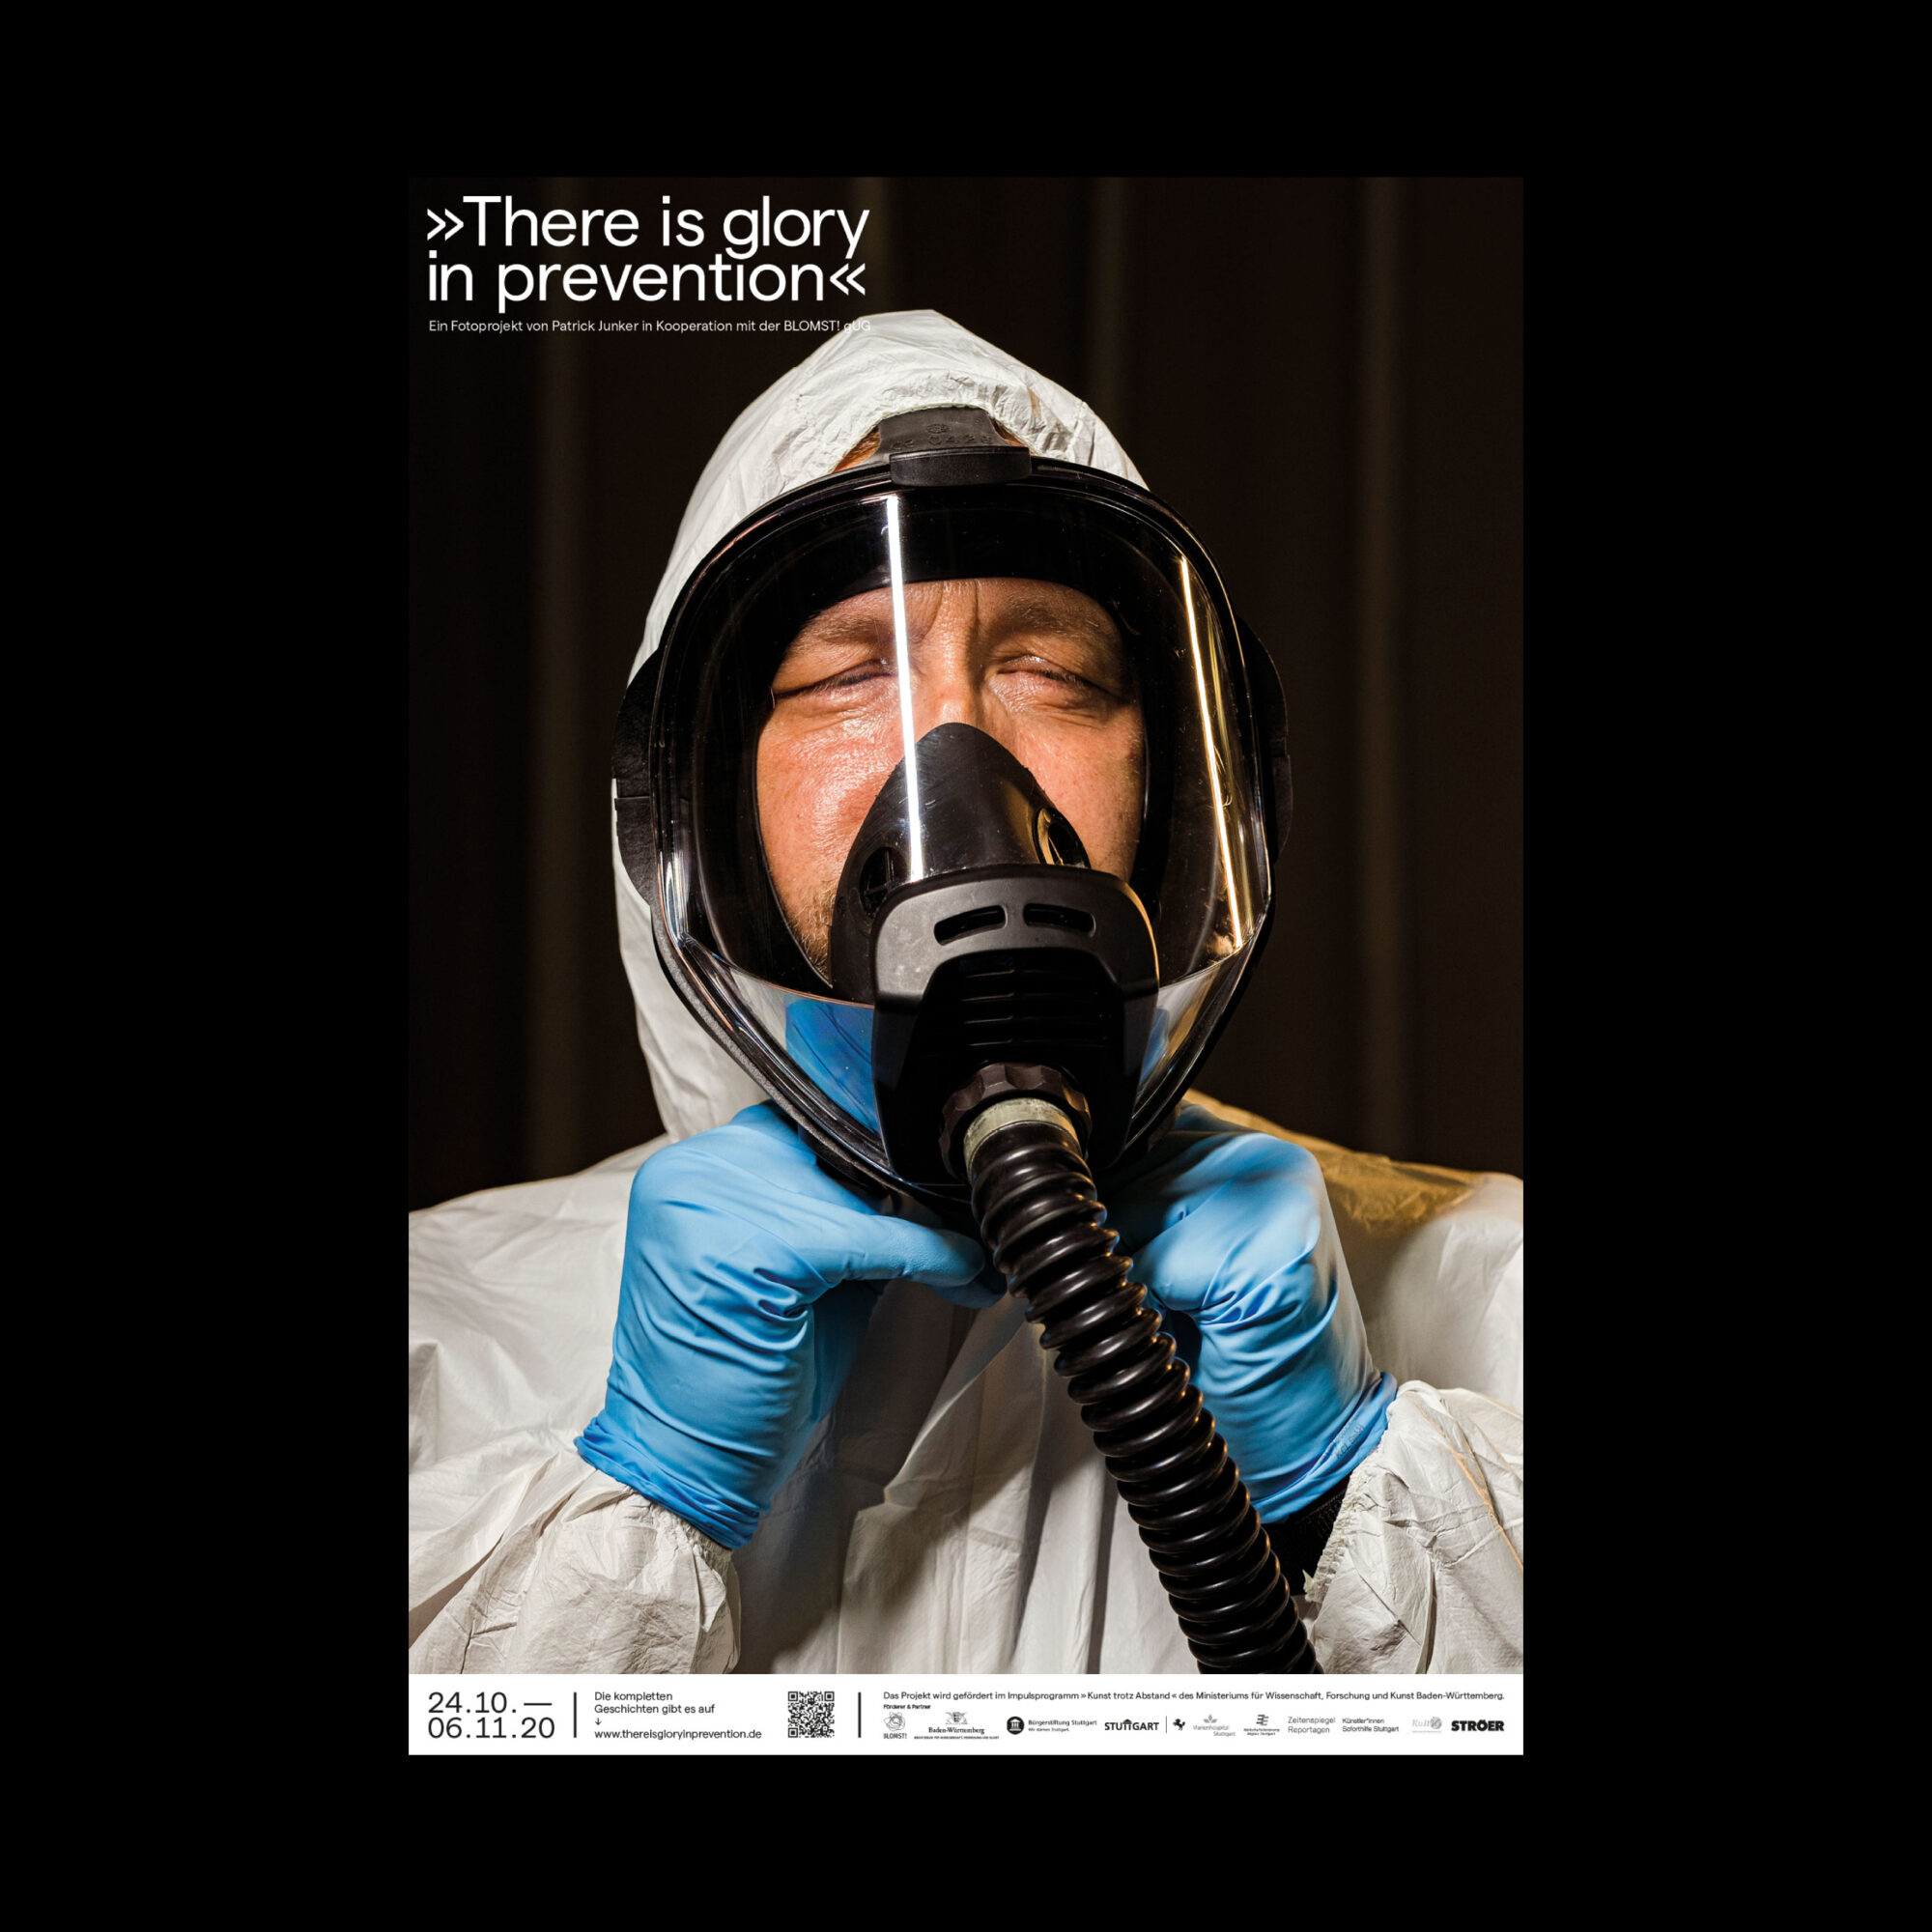 Gesichtsmaske coronapandemie stuttgart Plakatausstellung von Patrick junker 2020